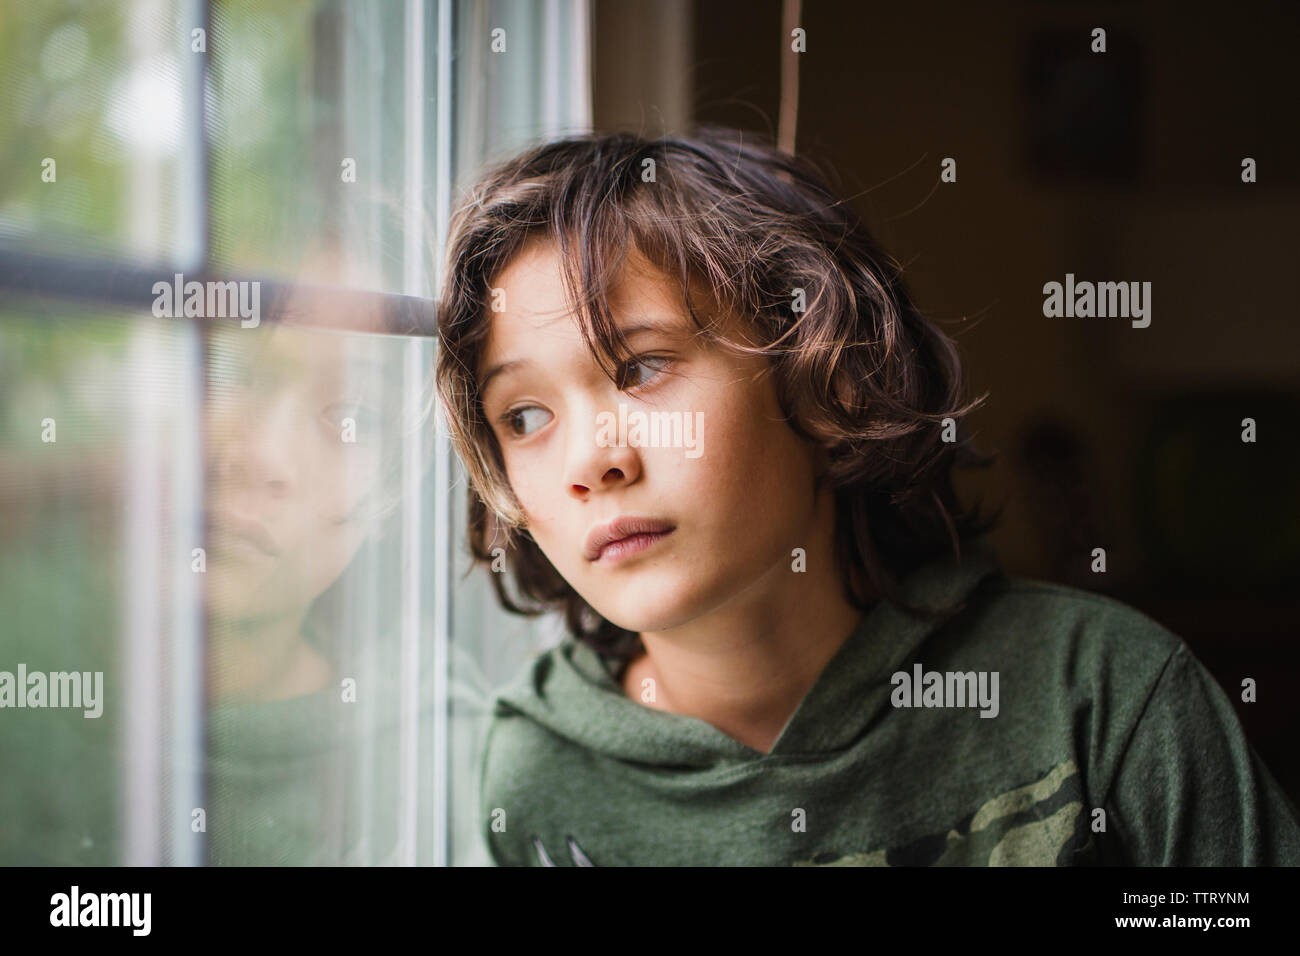 Un garçon regarde par la fenêtre avec une expression sur son visage Banque D'Images